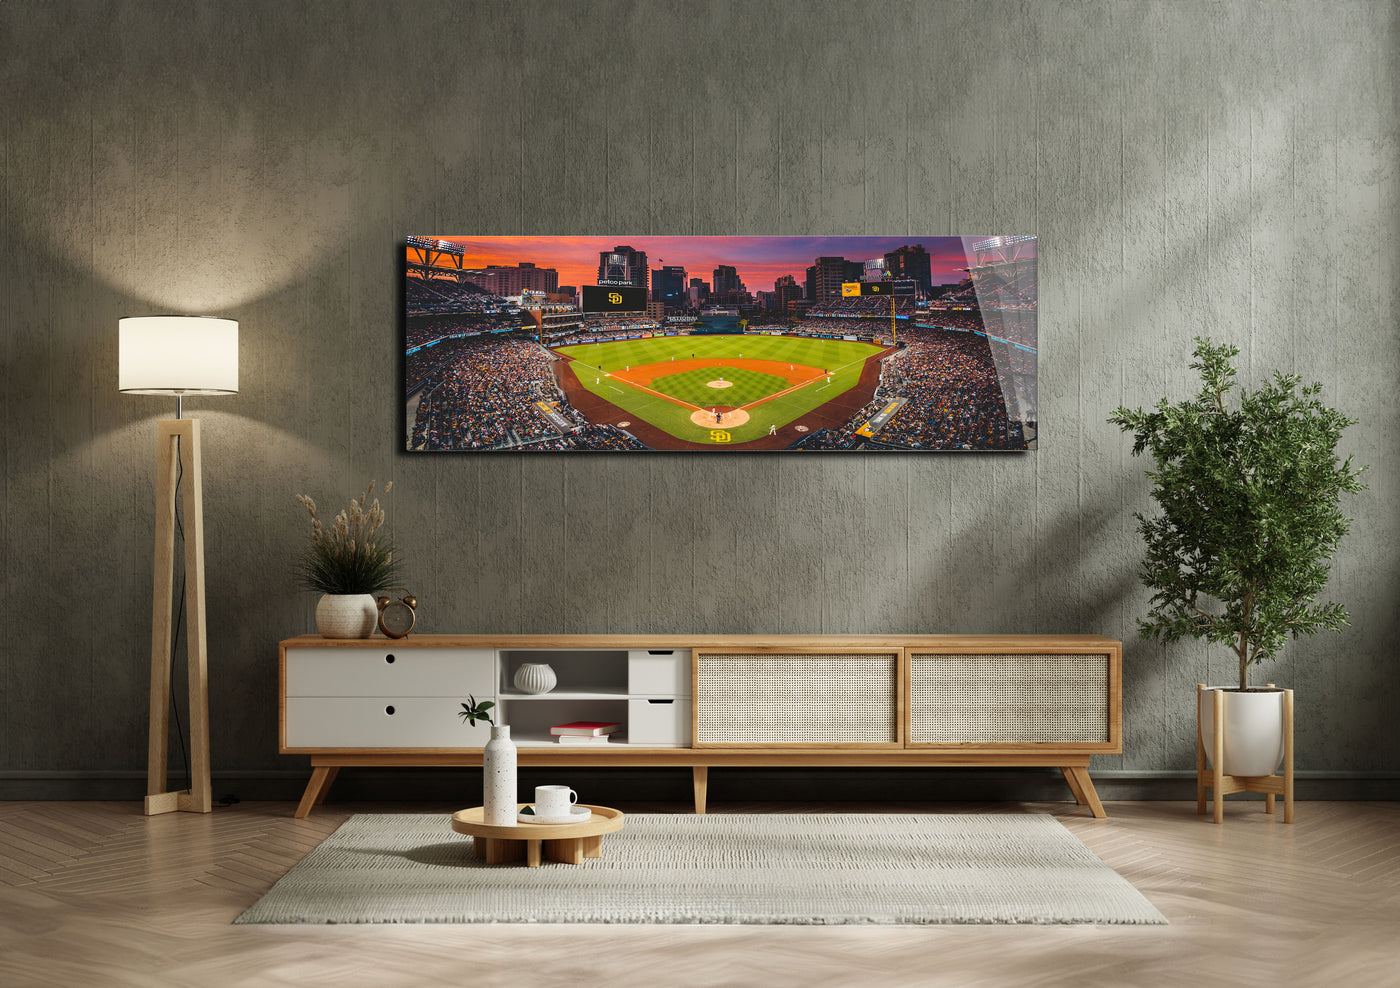 Petco Park baseball Stadium - San Diego stadium panoramic metal print by PortriLux